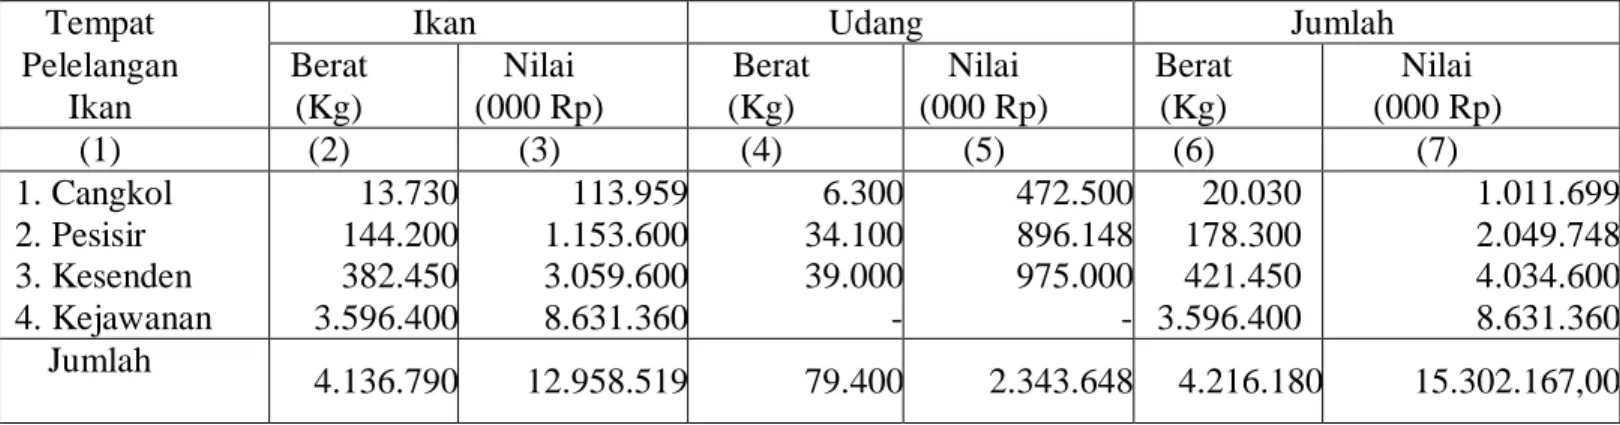 Tabel 1. Jumlah produksi dan nilai produksi ikan tahun 2015 